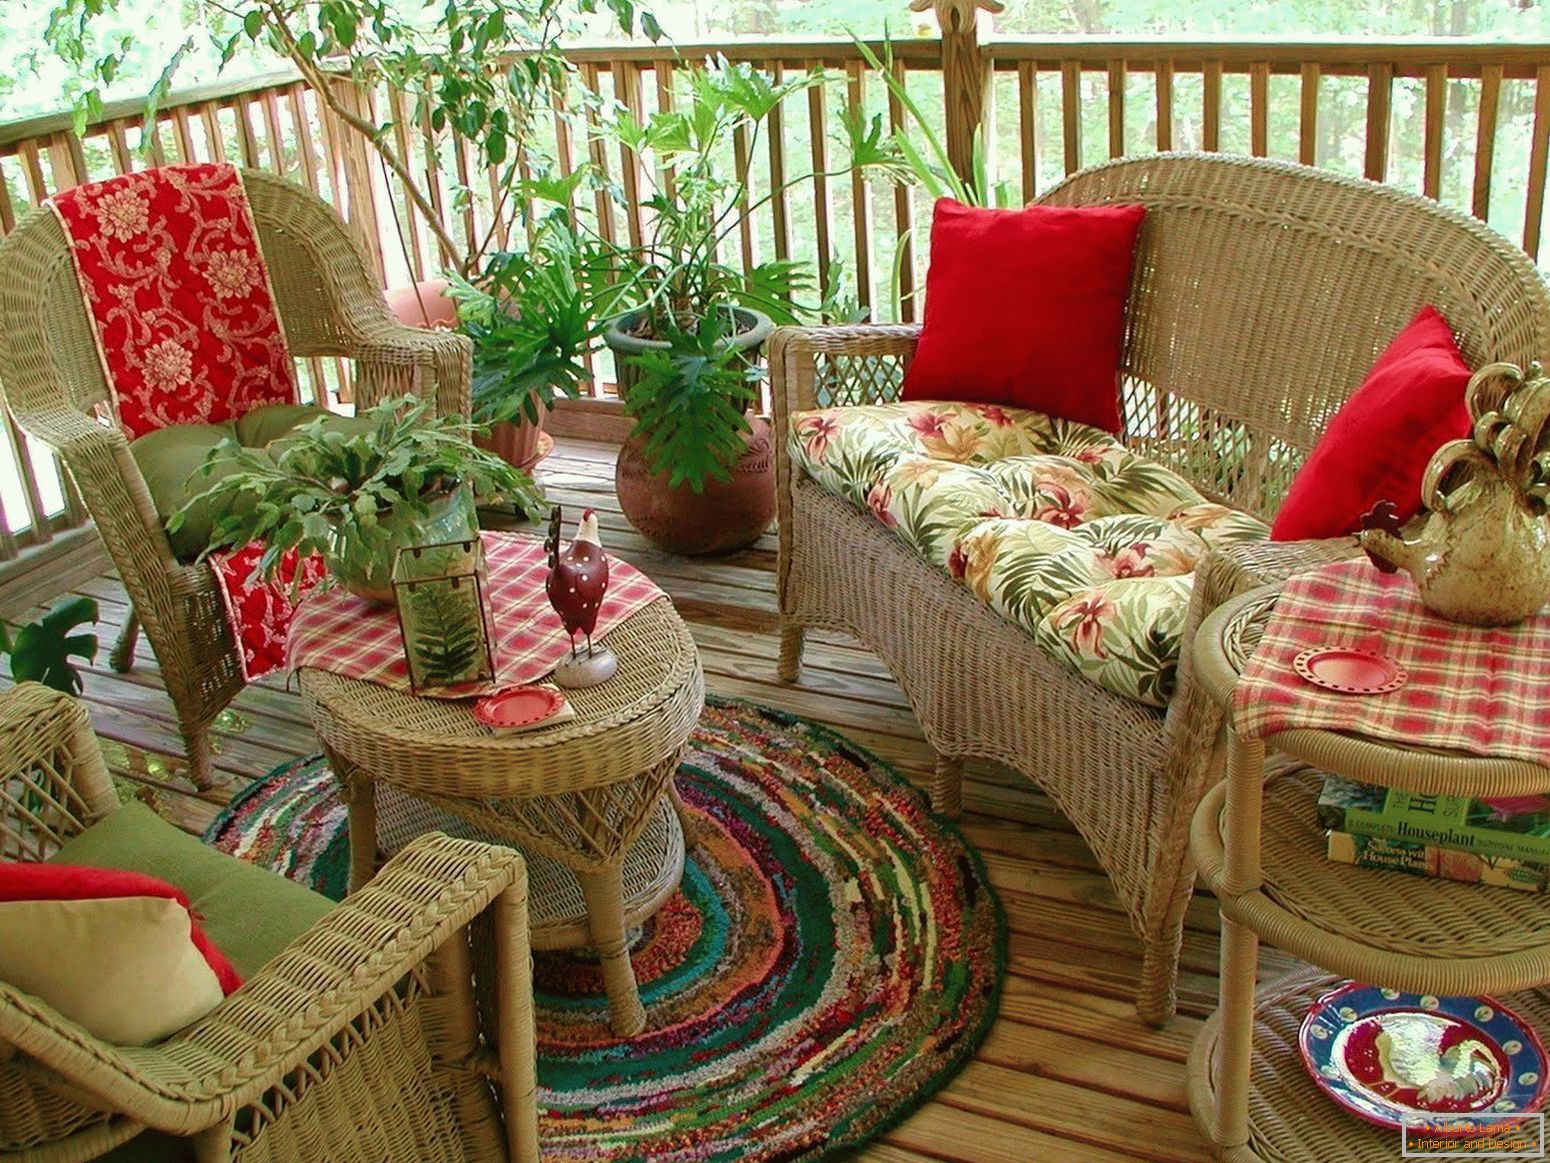 Wicker furniture on the veranda